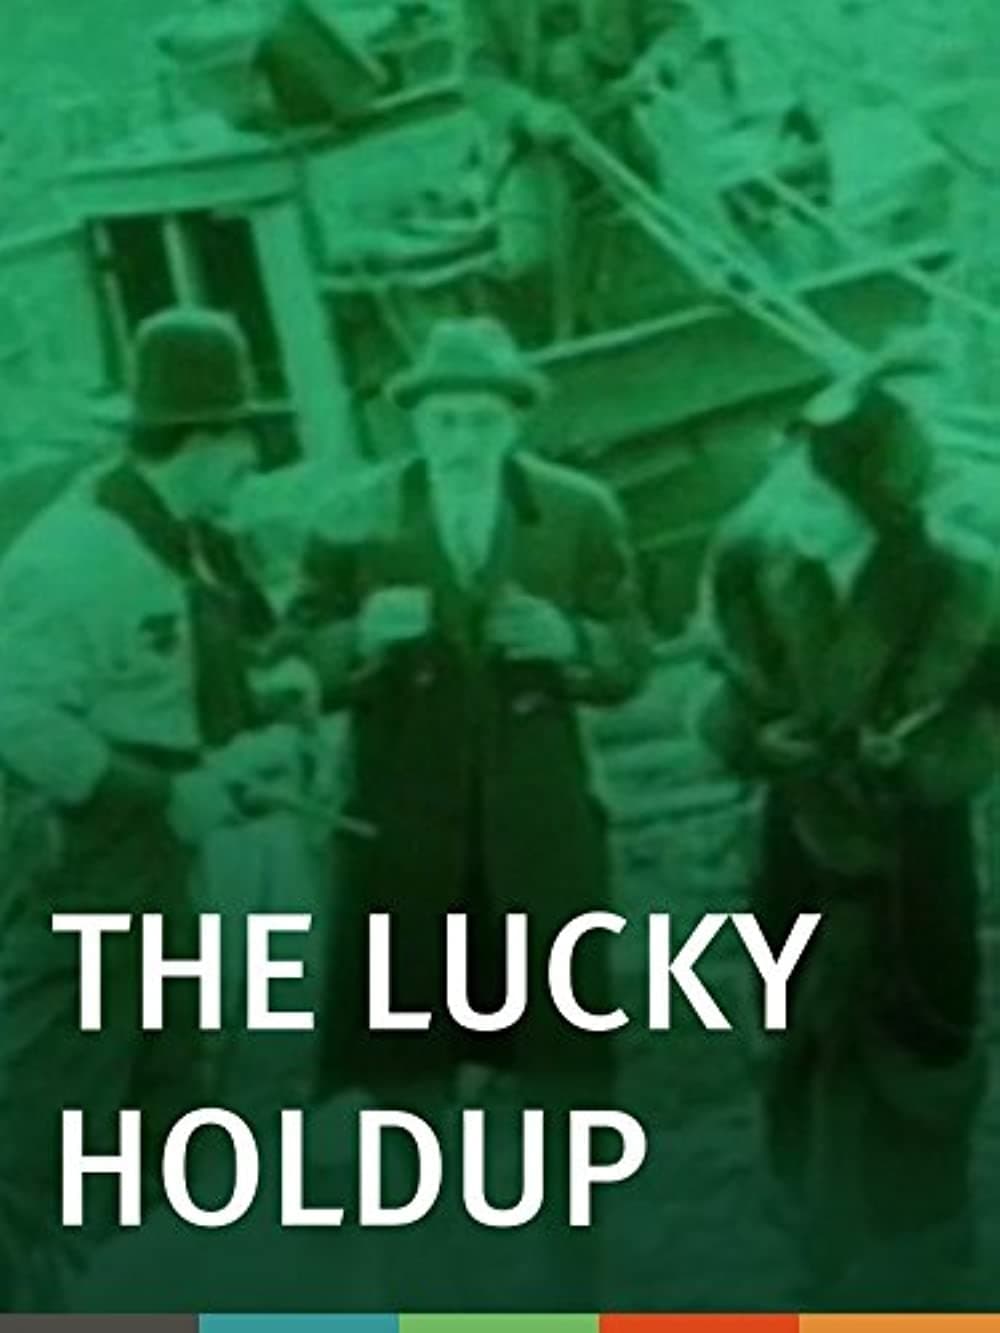 The Lucky Holdup